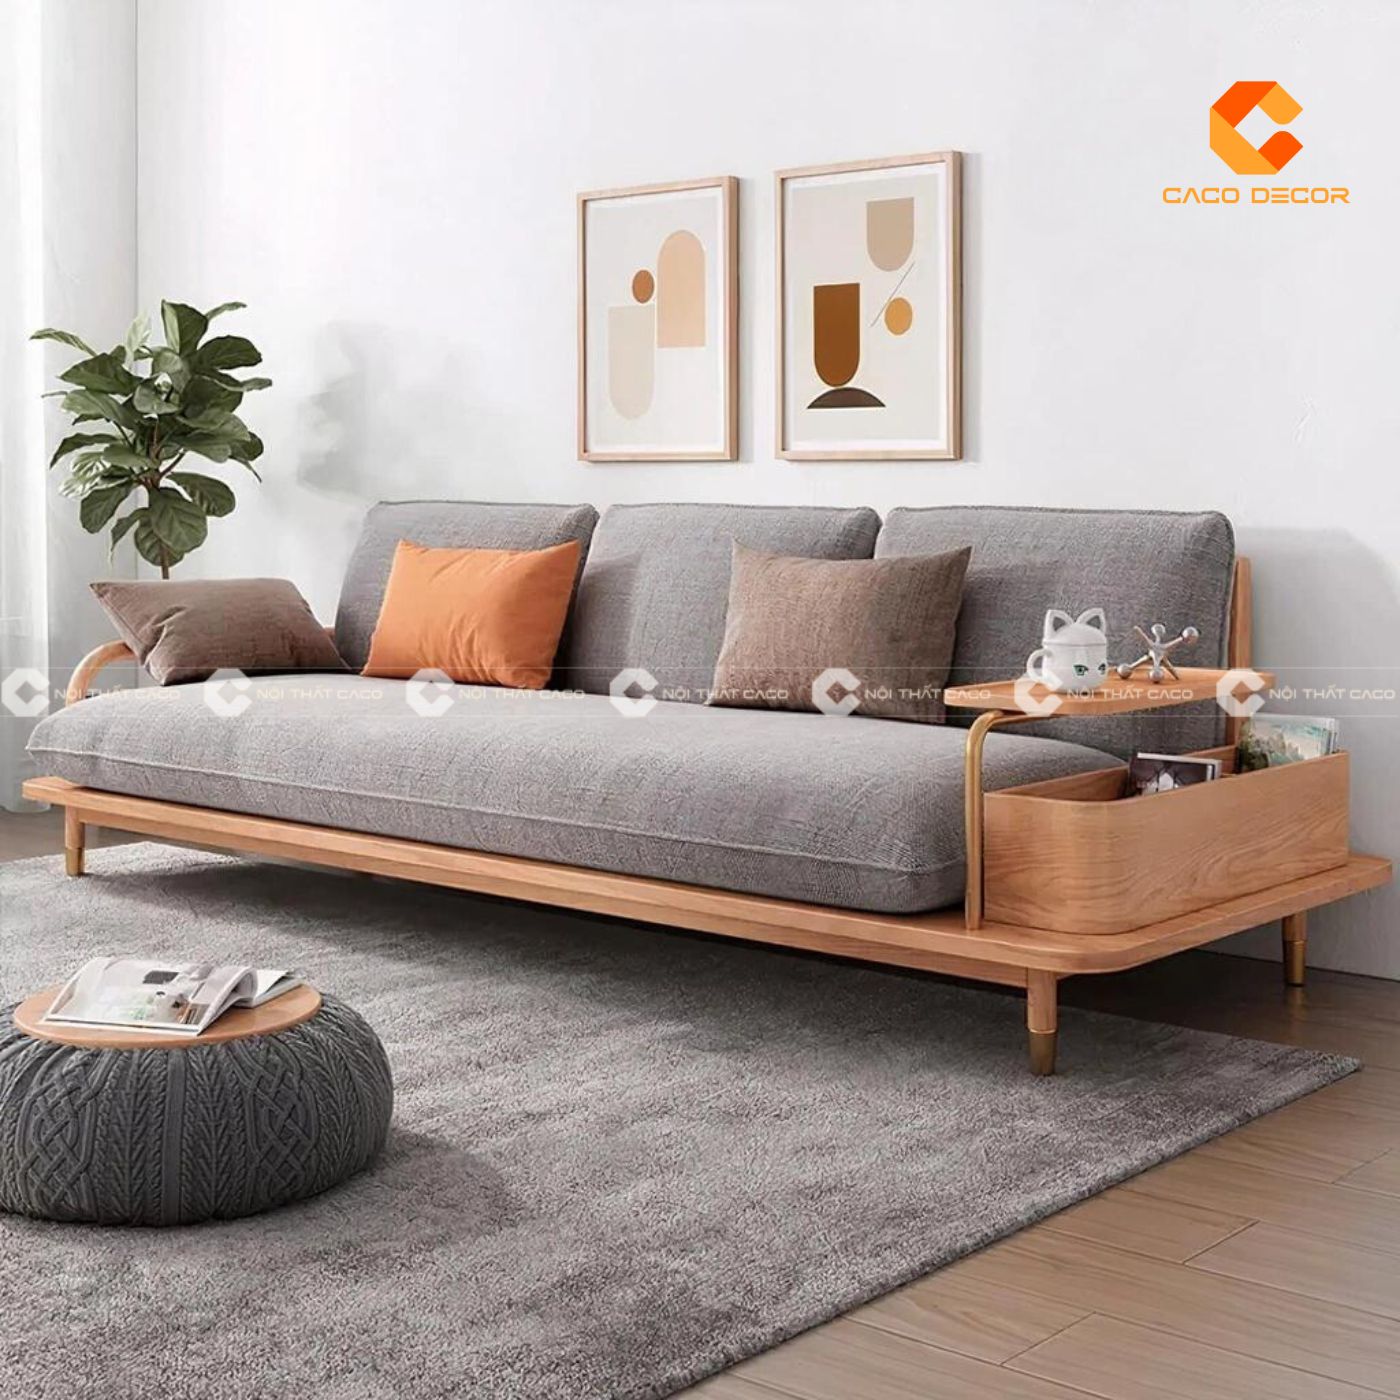 Sofa gỗ hiện đại lựa chọn hoàn hảo cho phòng khách chung cư 8